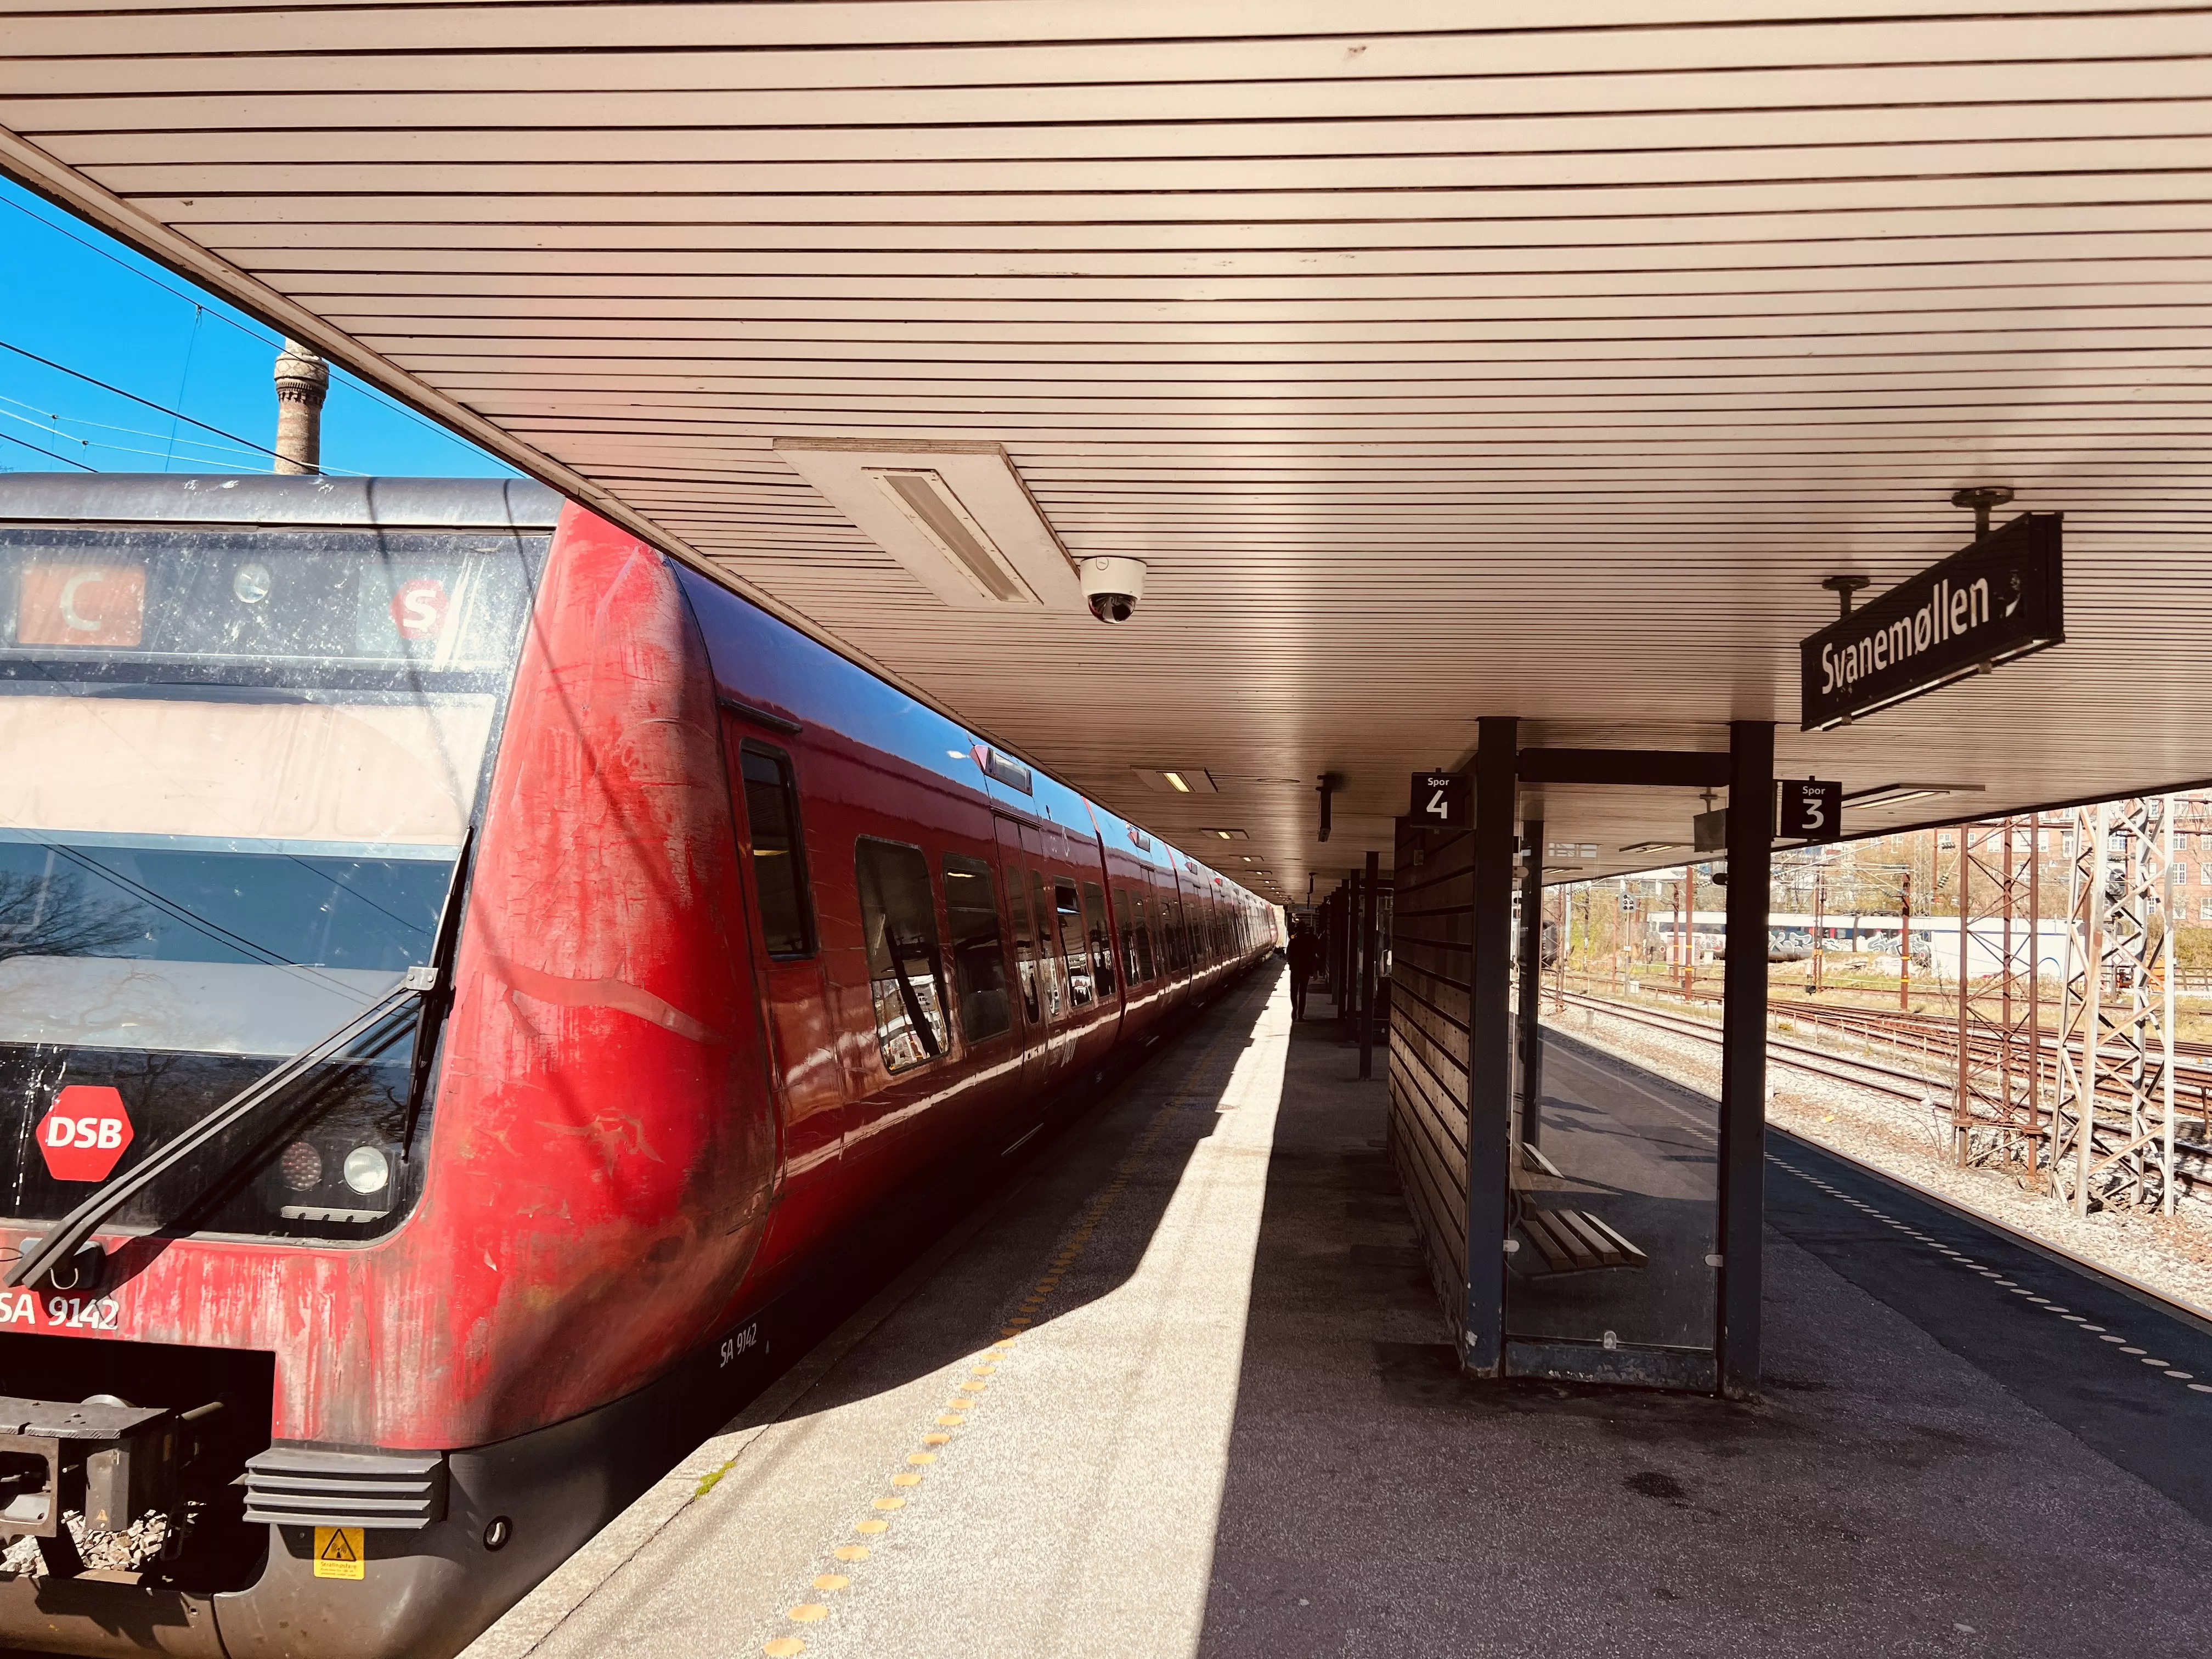 Billede af tog ud for Svanemøllen S-togsstation.